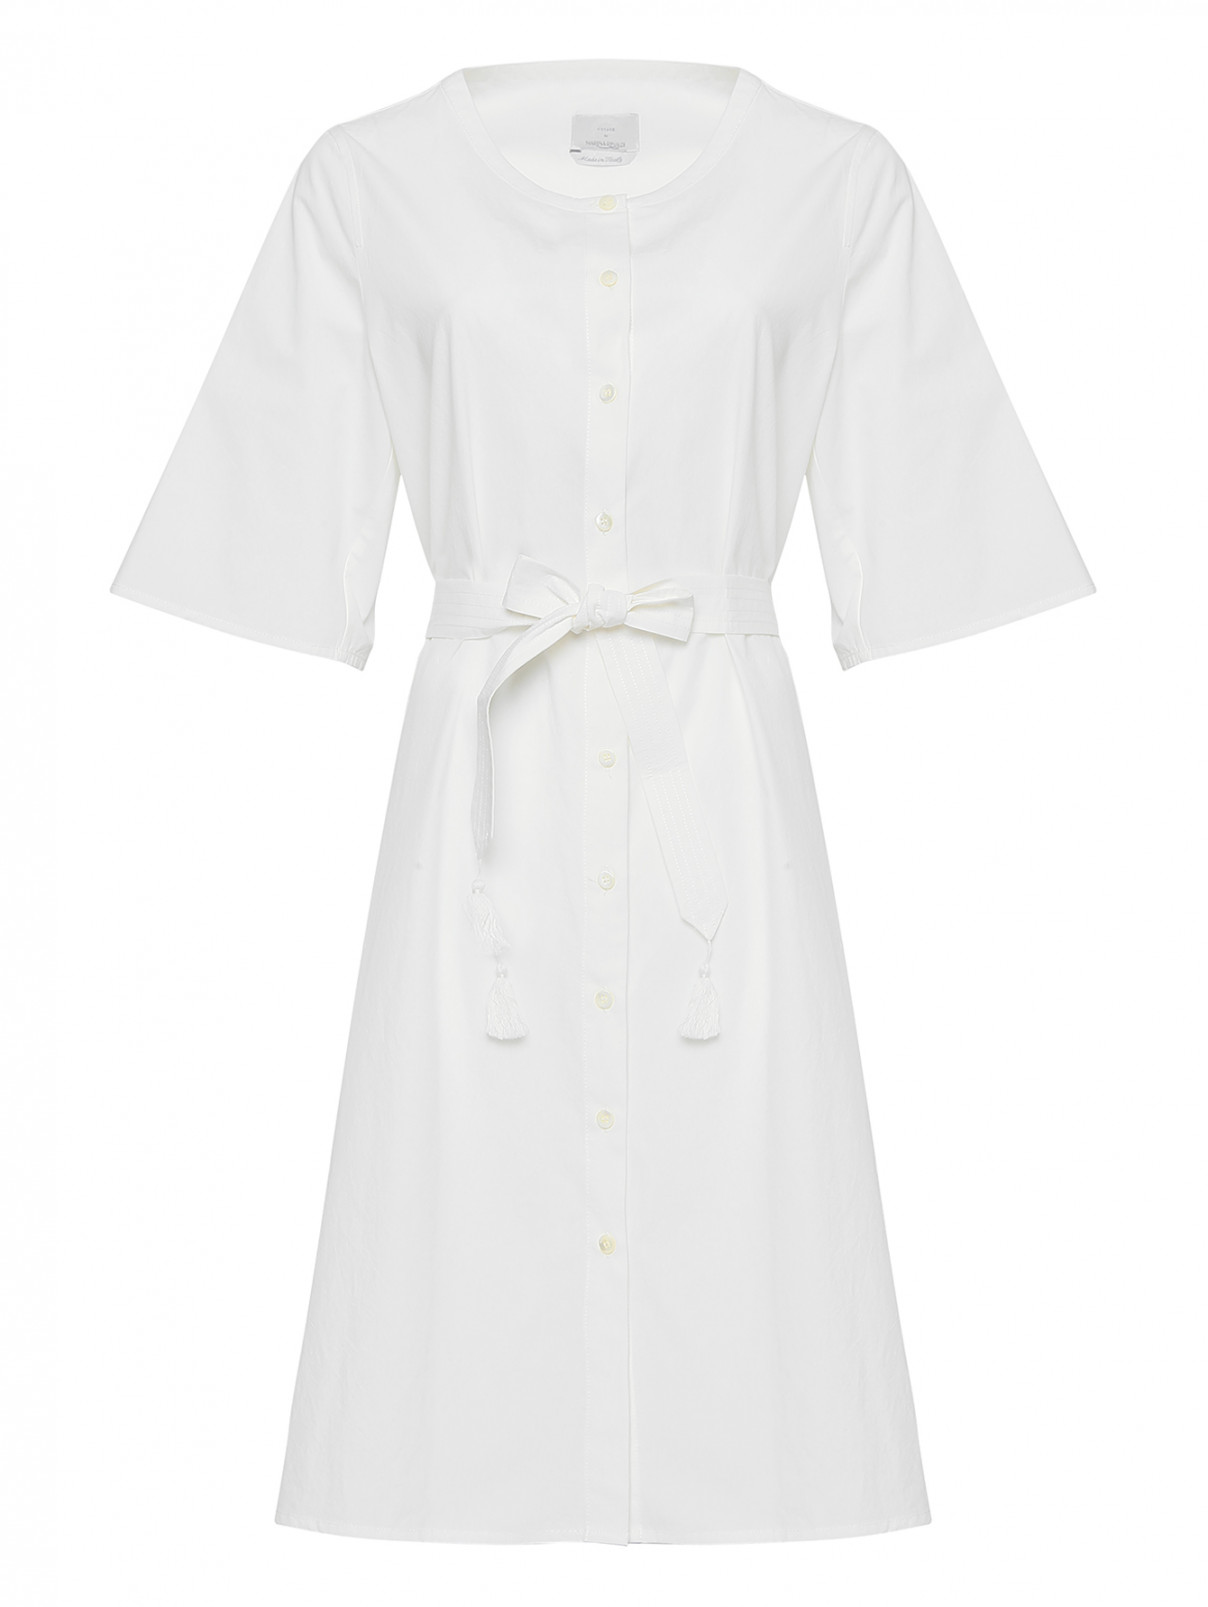 Платье хлопковое, на пуговицах Marina Rinaldi  –  Общий вид  – Цвет:  Белый